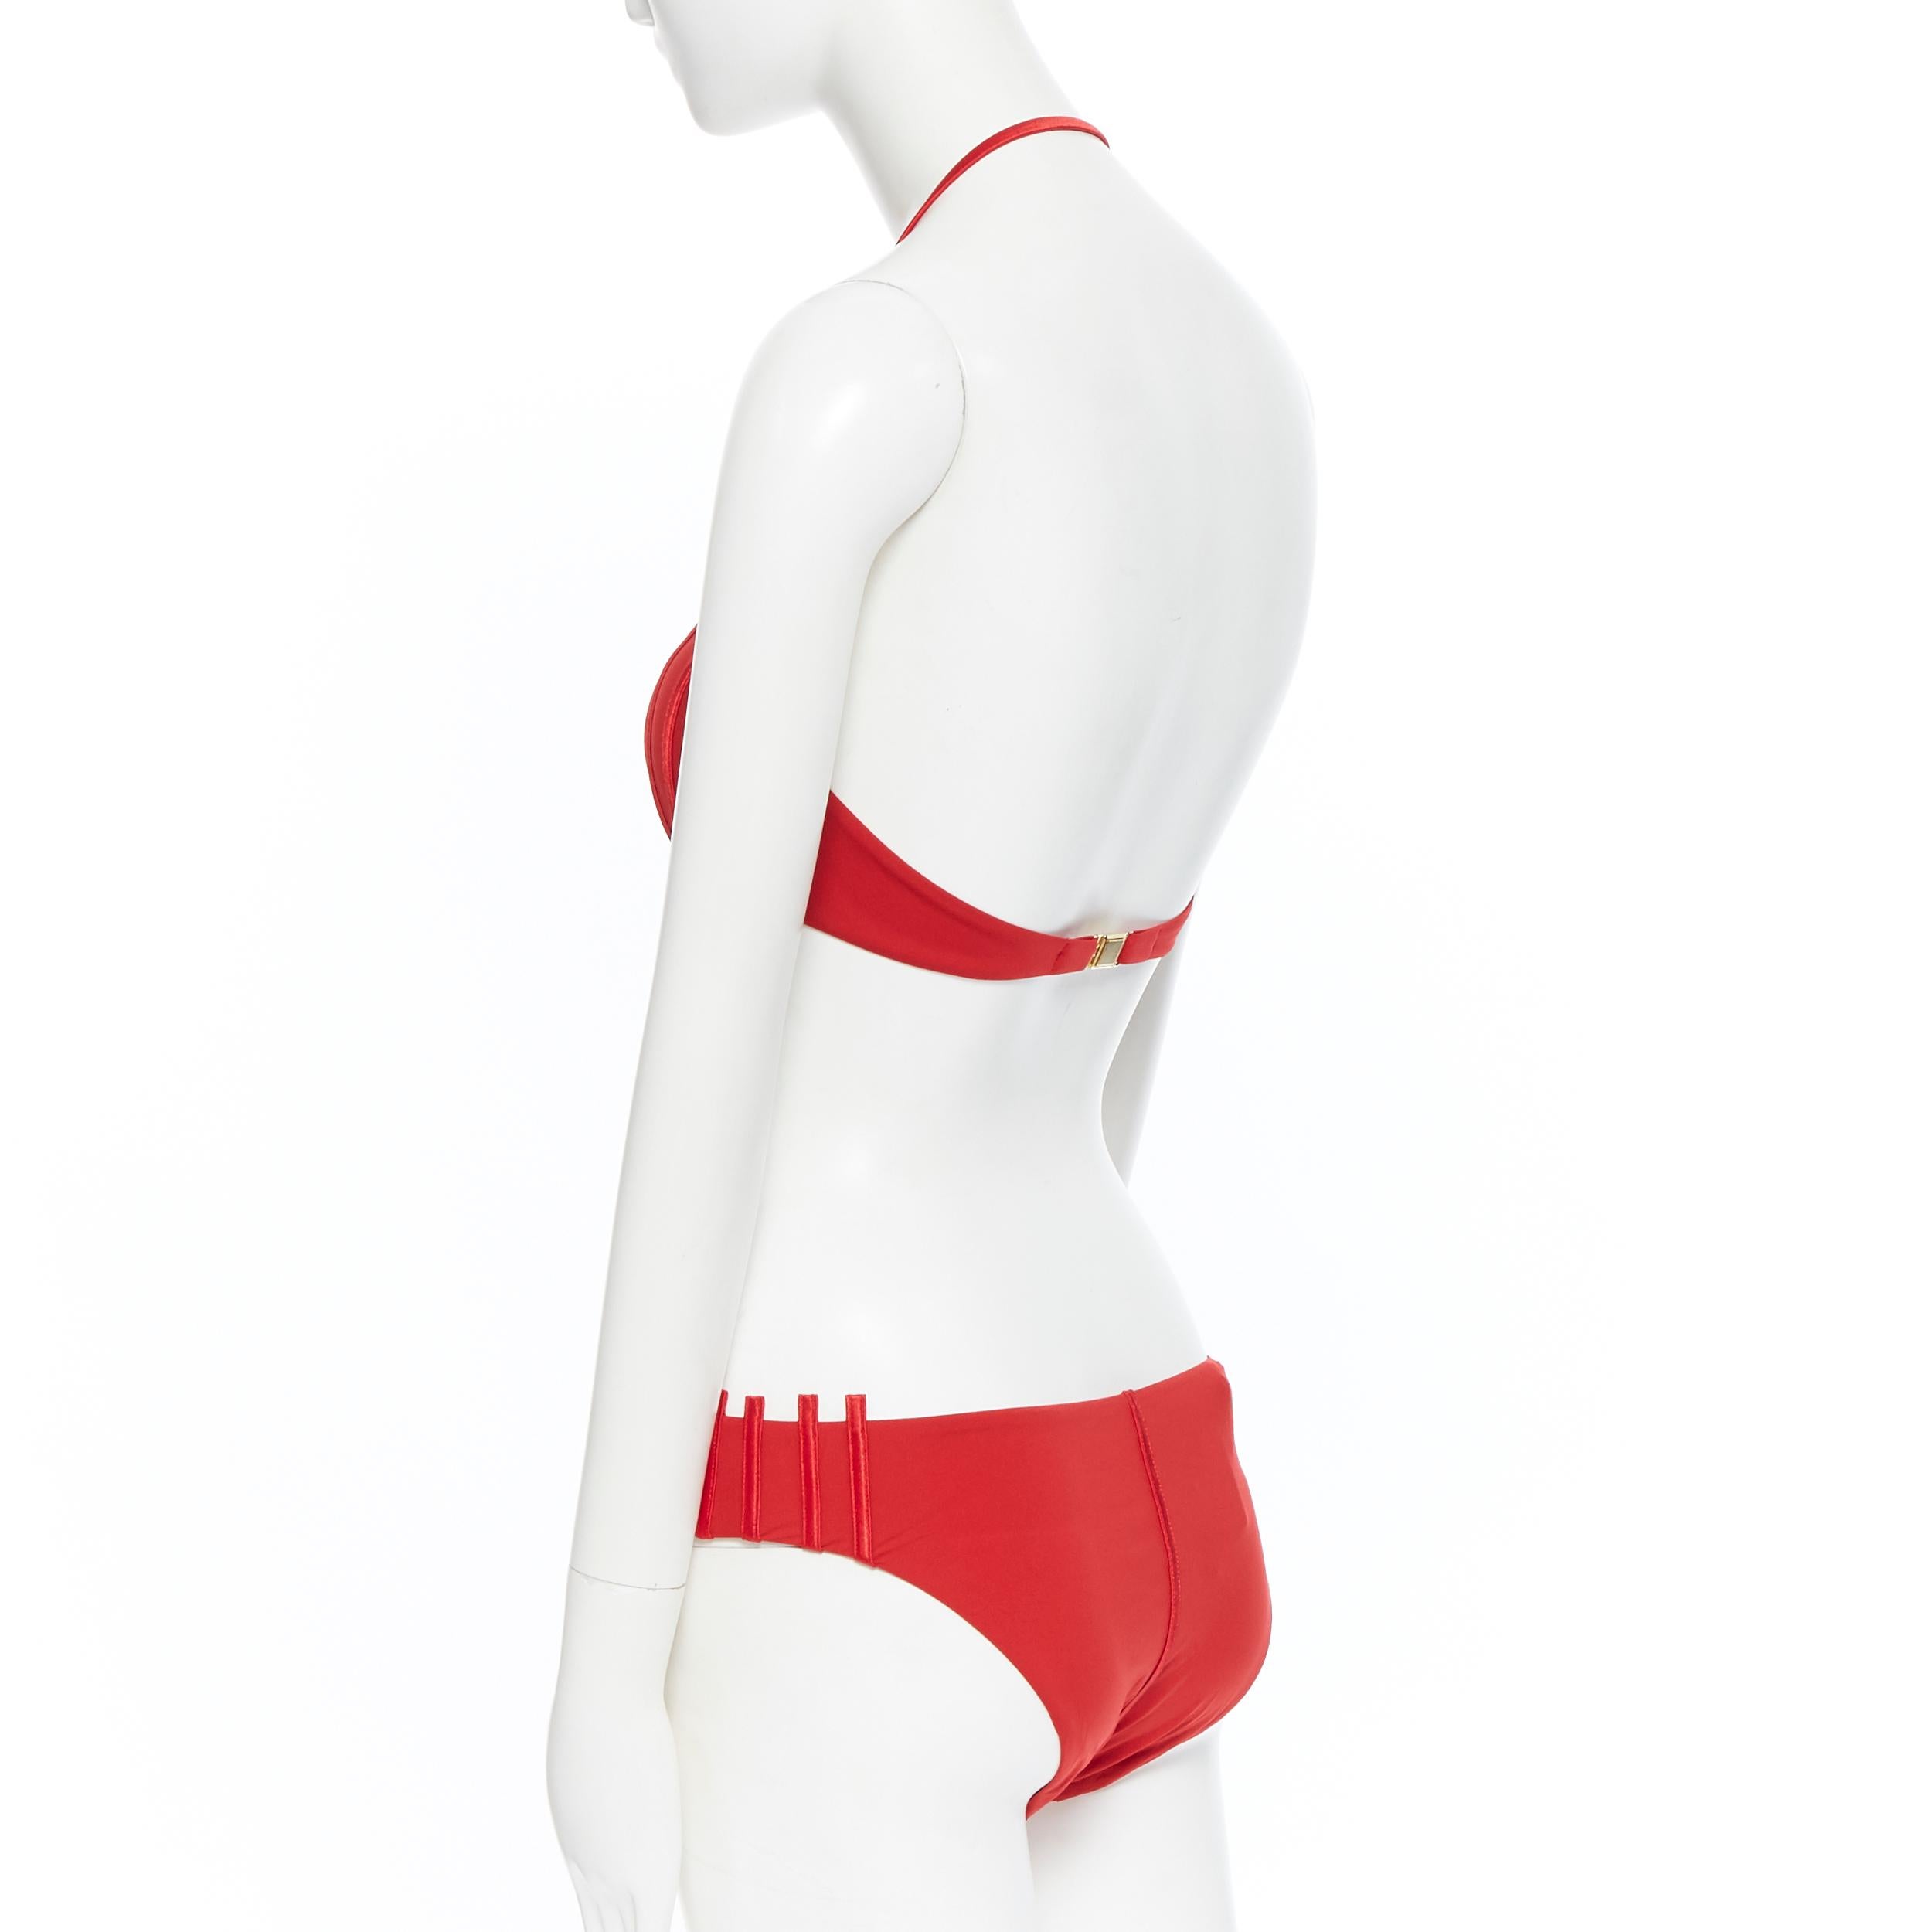 new LA PERLA Graphique Couture red boned sheer body 2-pc bikini swimsuit IT44B M 2